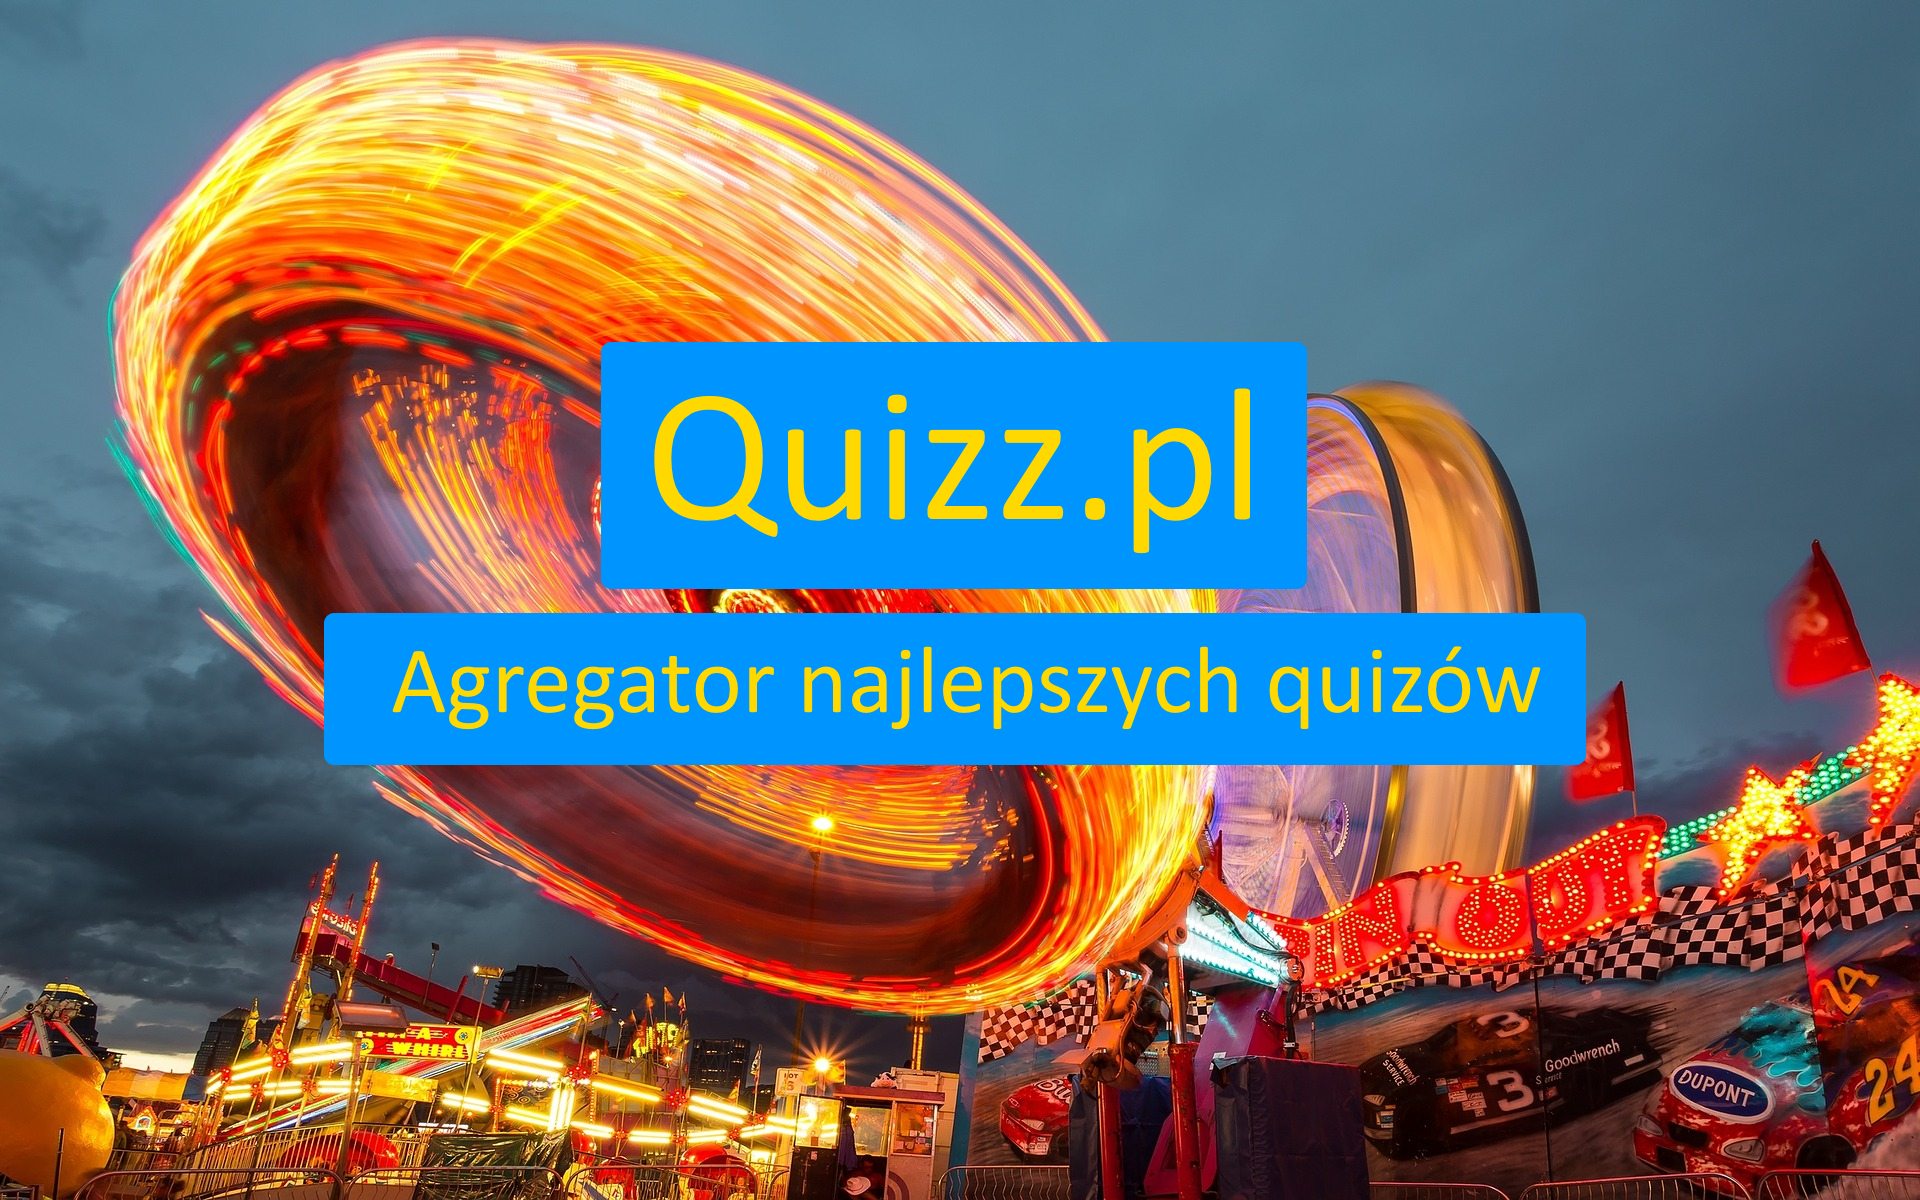 Umysł - bezpłatne quizy, testy wiedzy i ankiety - www.quizz.pl